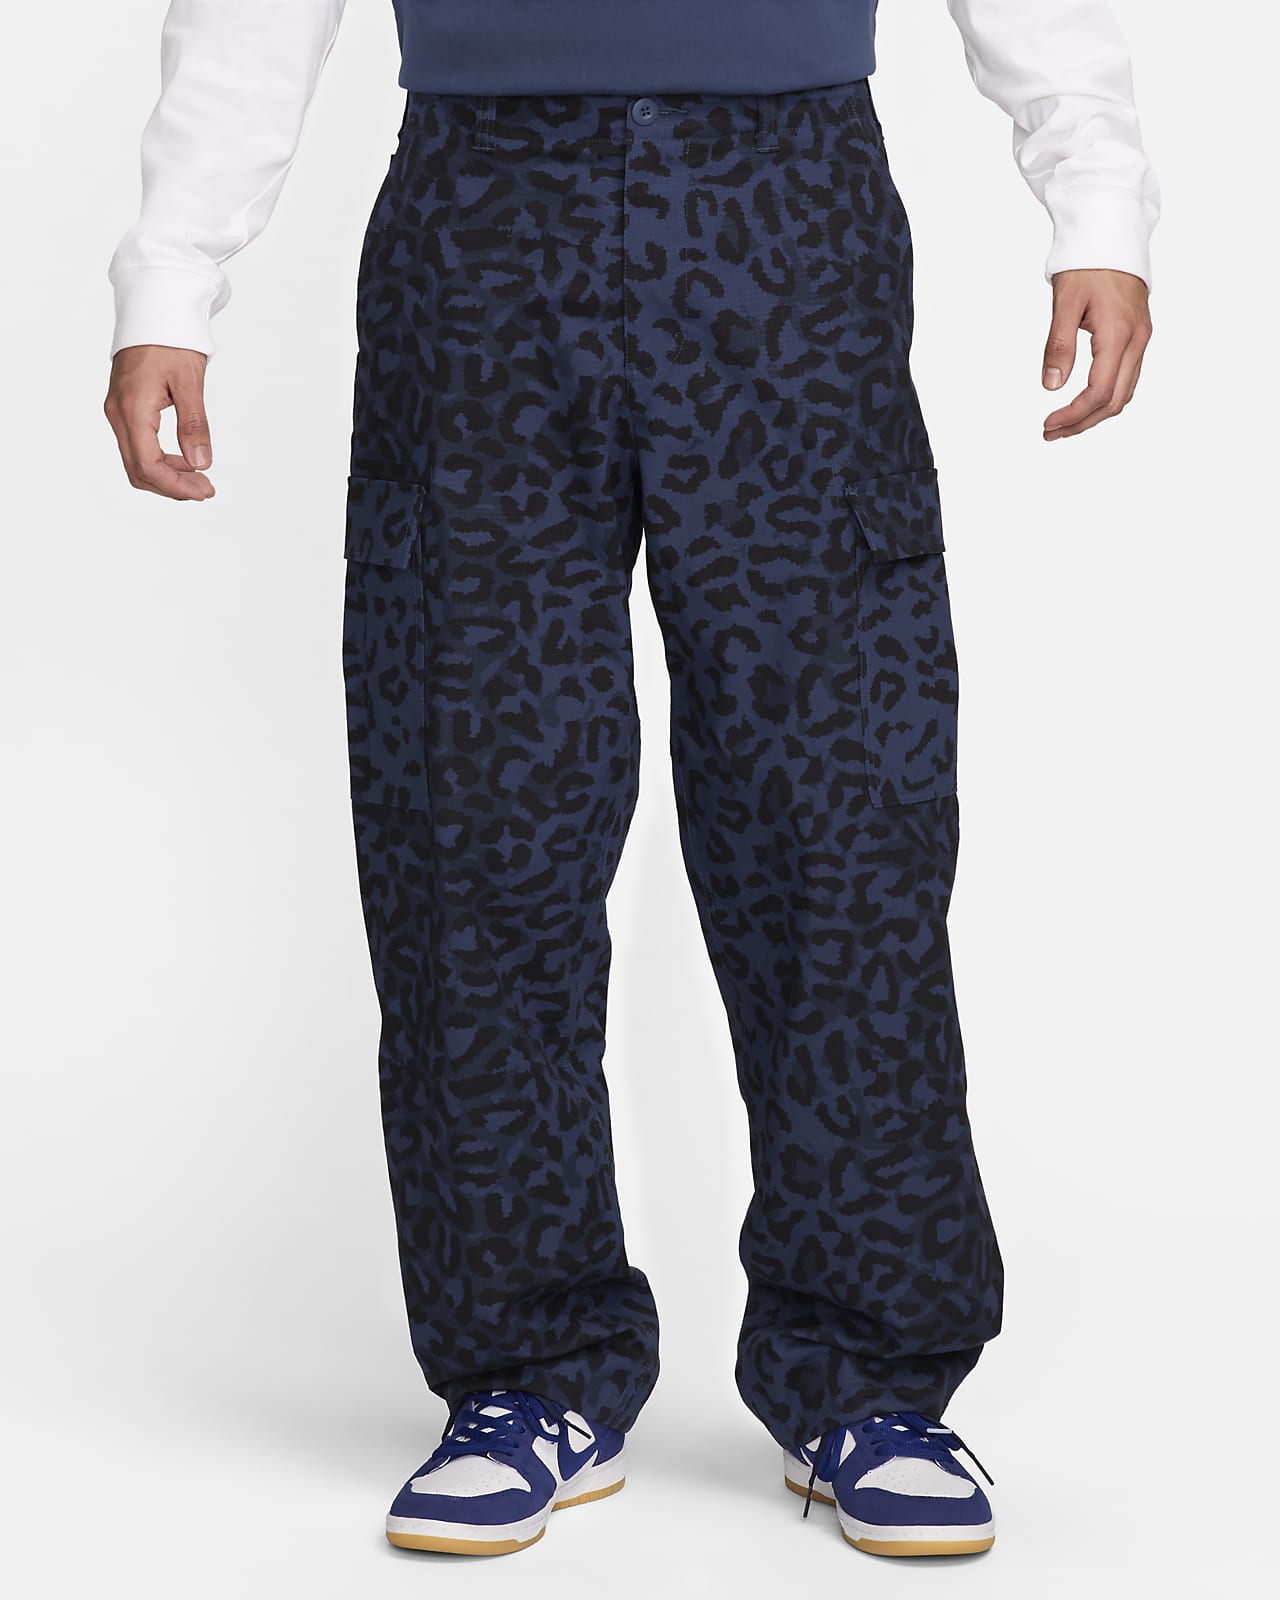 Nike SB Kearny Pantalón cargo con estampado por toda la prenda - Hombre